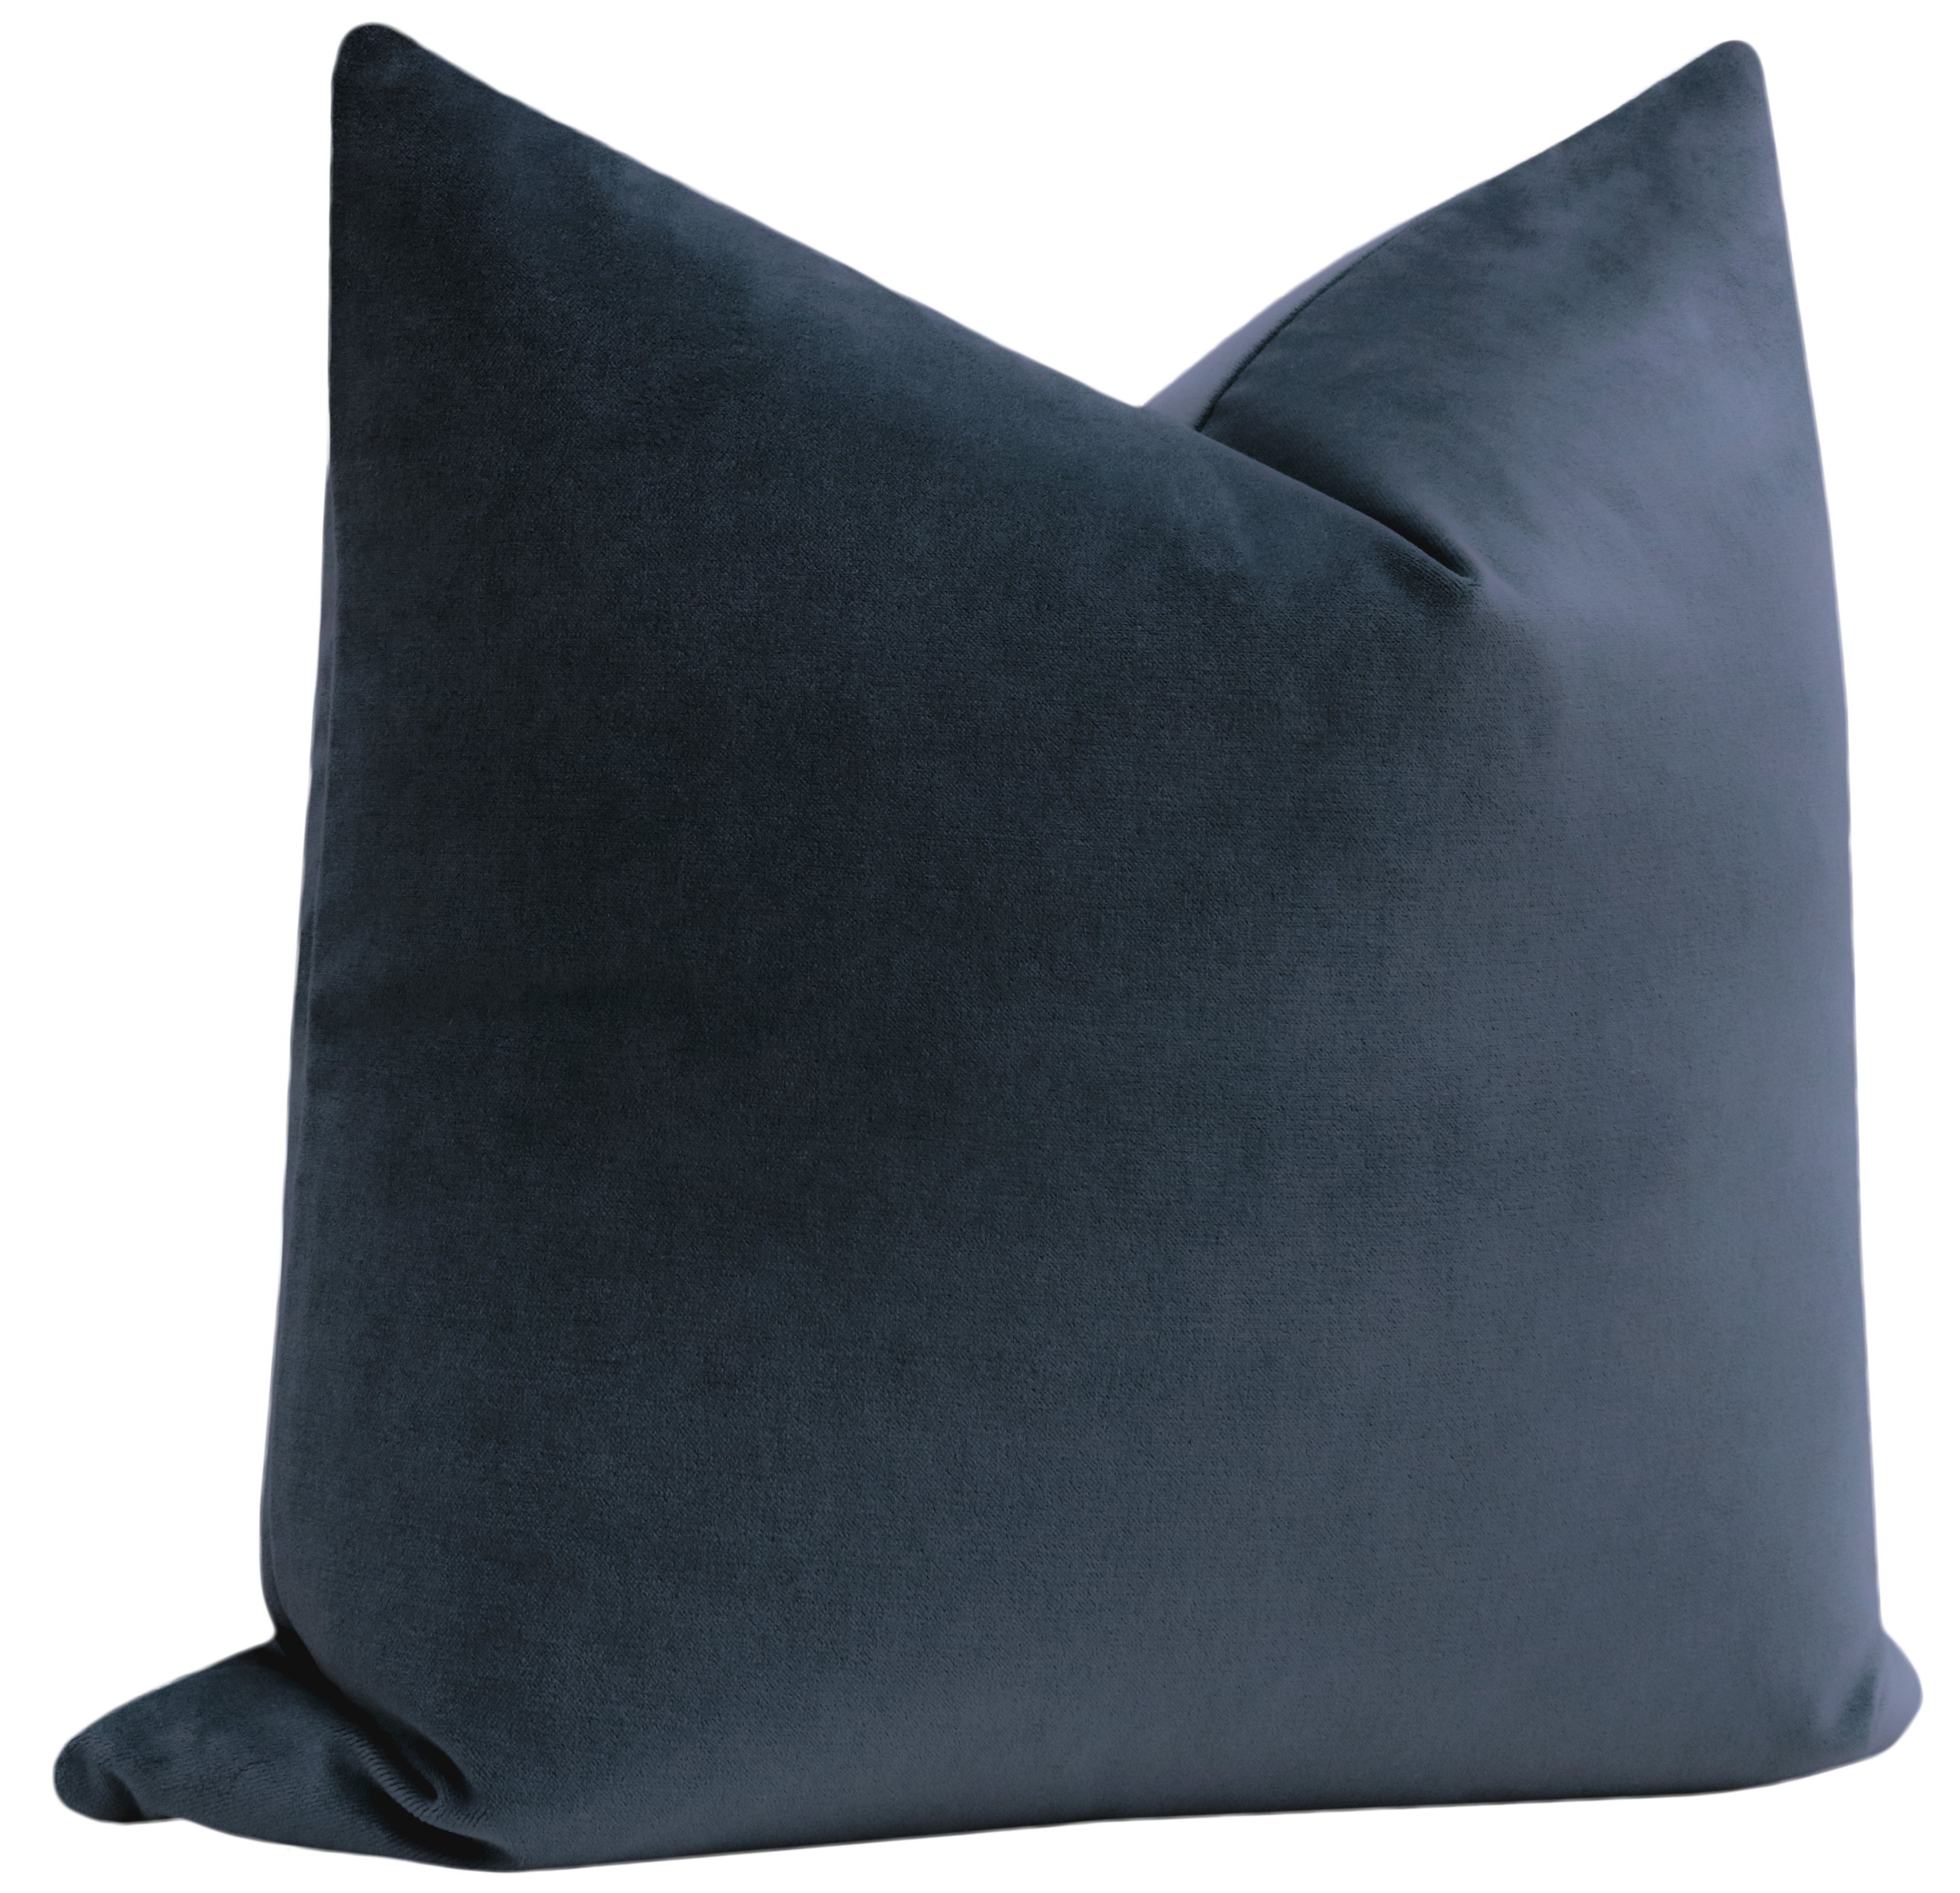 Society Velvet Pillow, Prussian Blue, 20" x 20" - Image 1